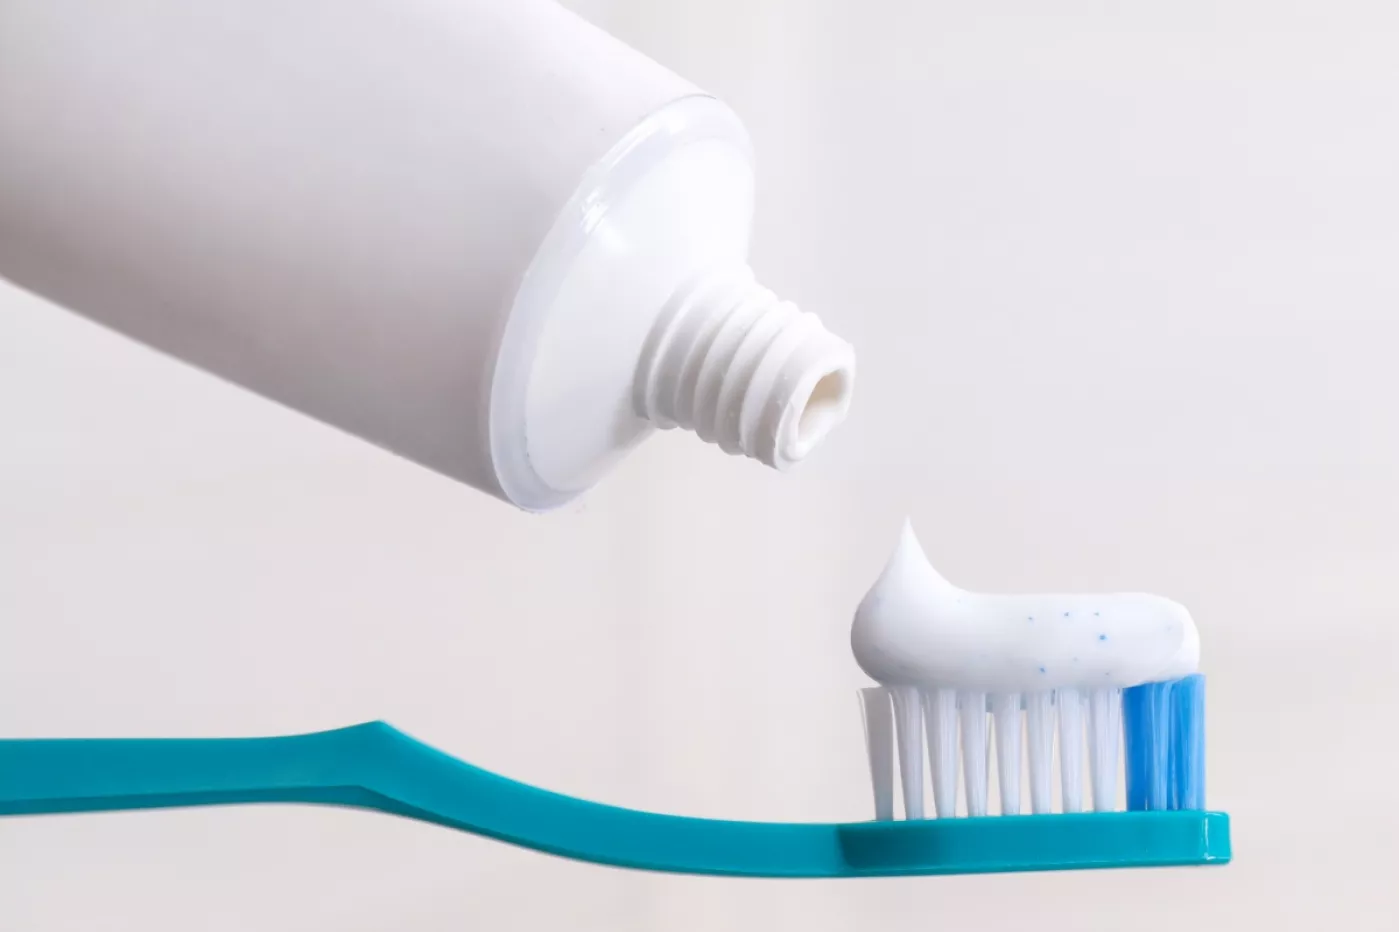 Los dentífricos tienen la consideración de productos de cuidado personal.